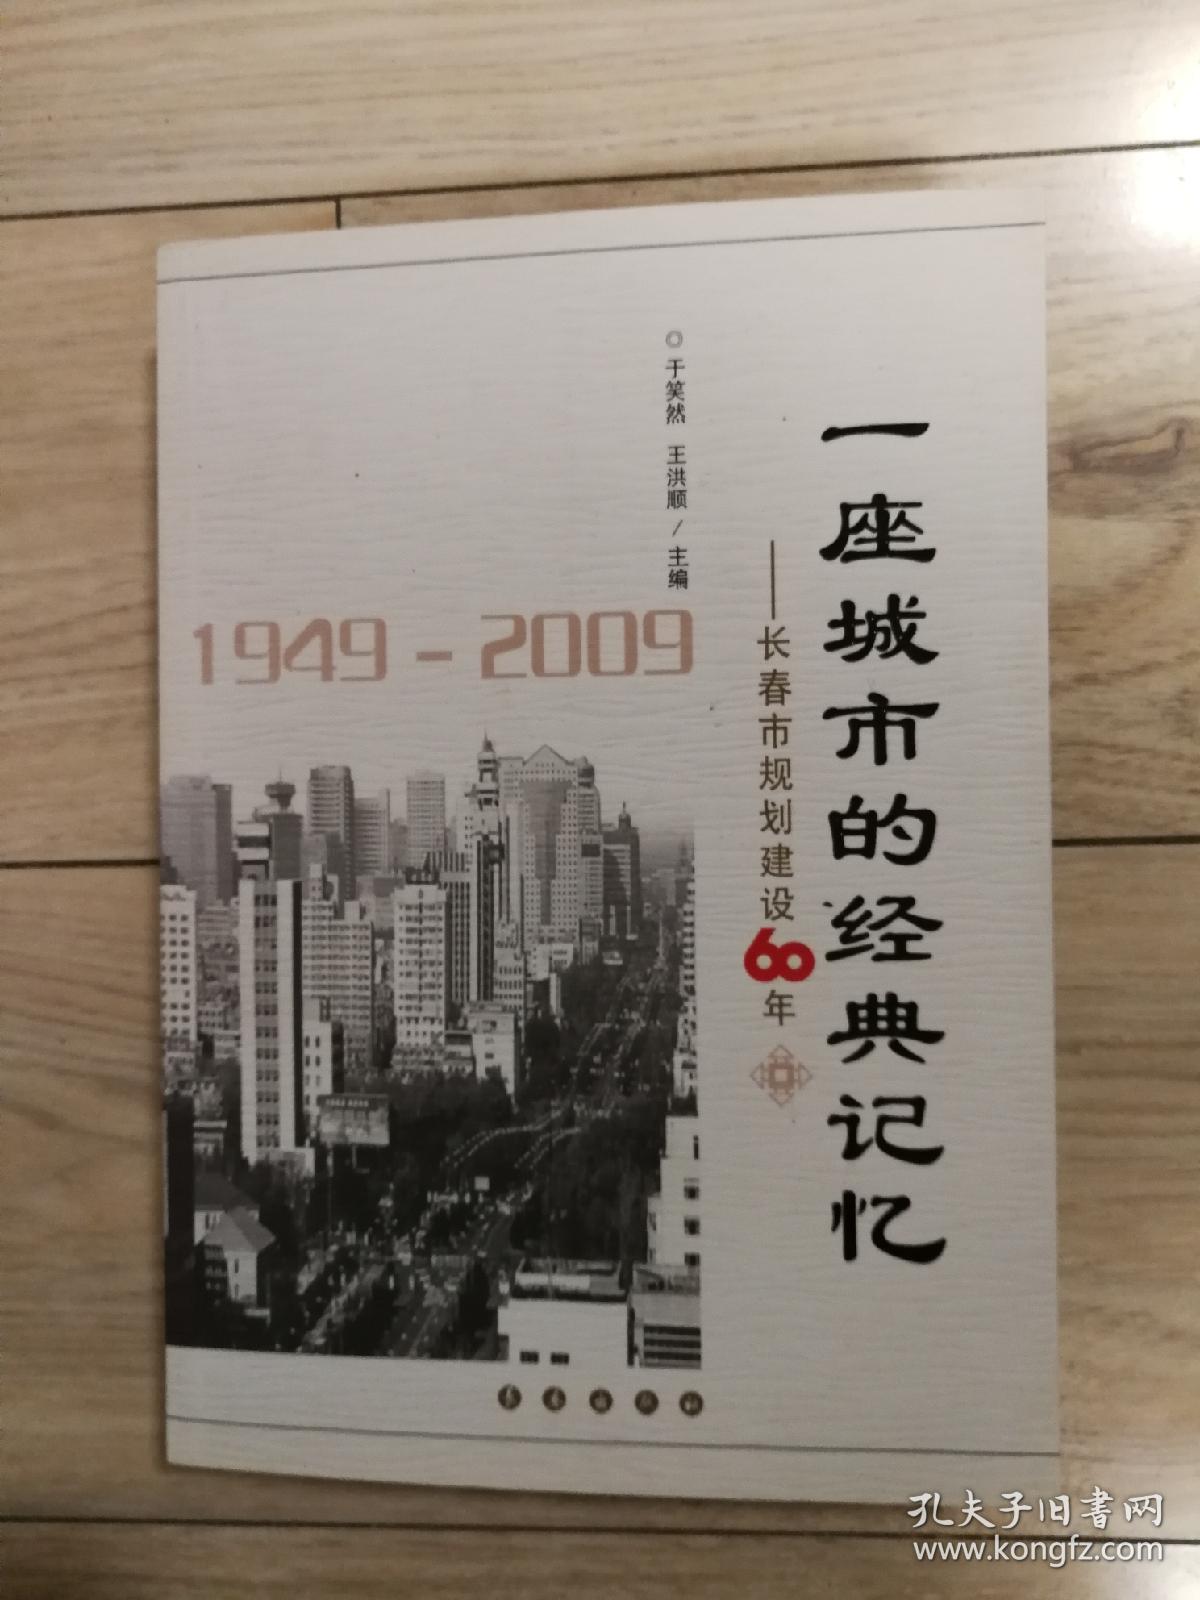 一座城市的经典记忆——长春规划建设60年（1949-2009）